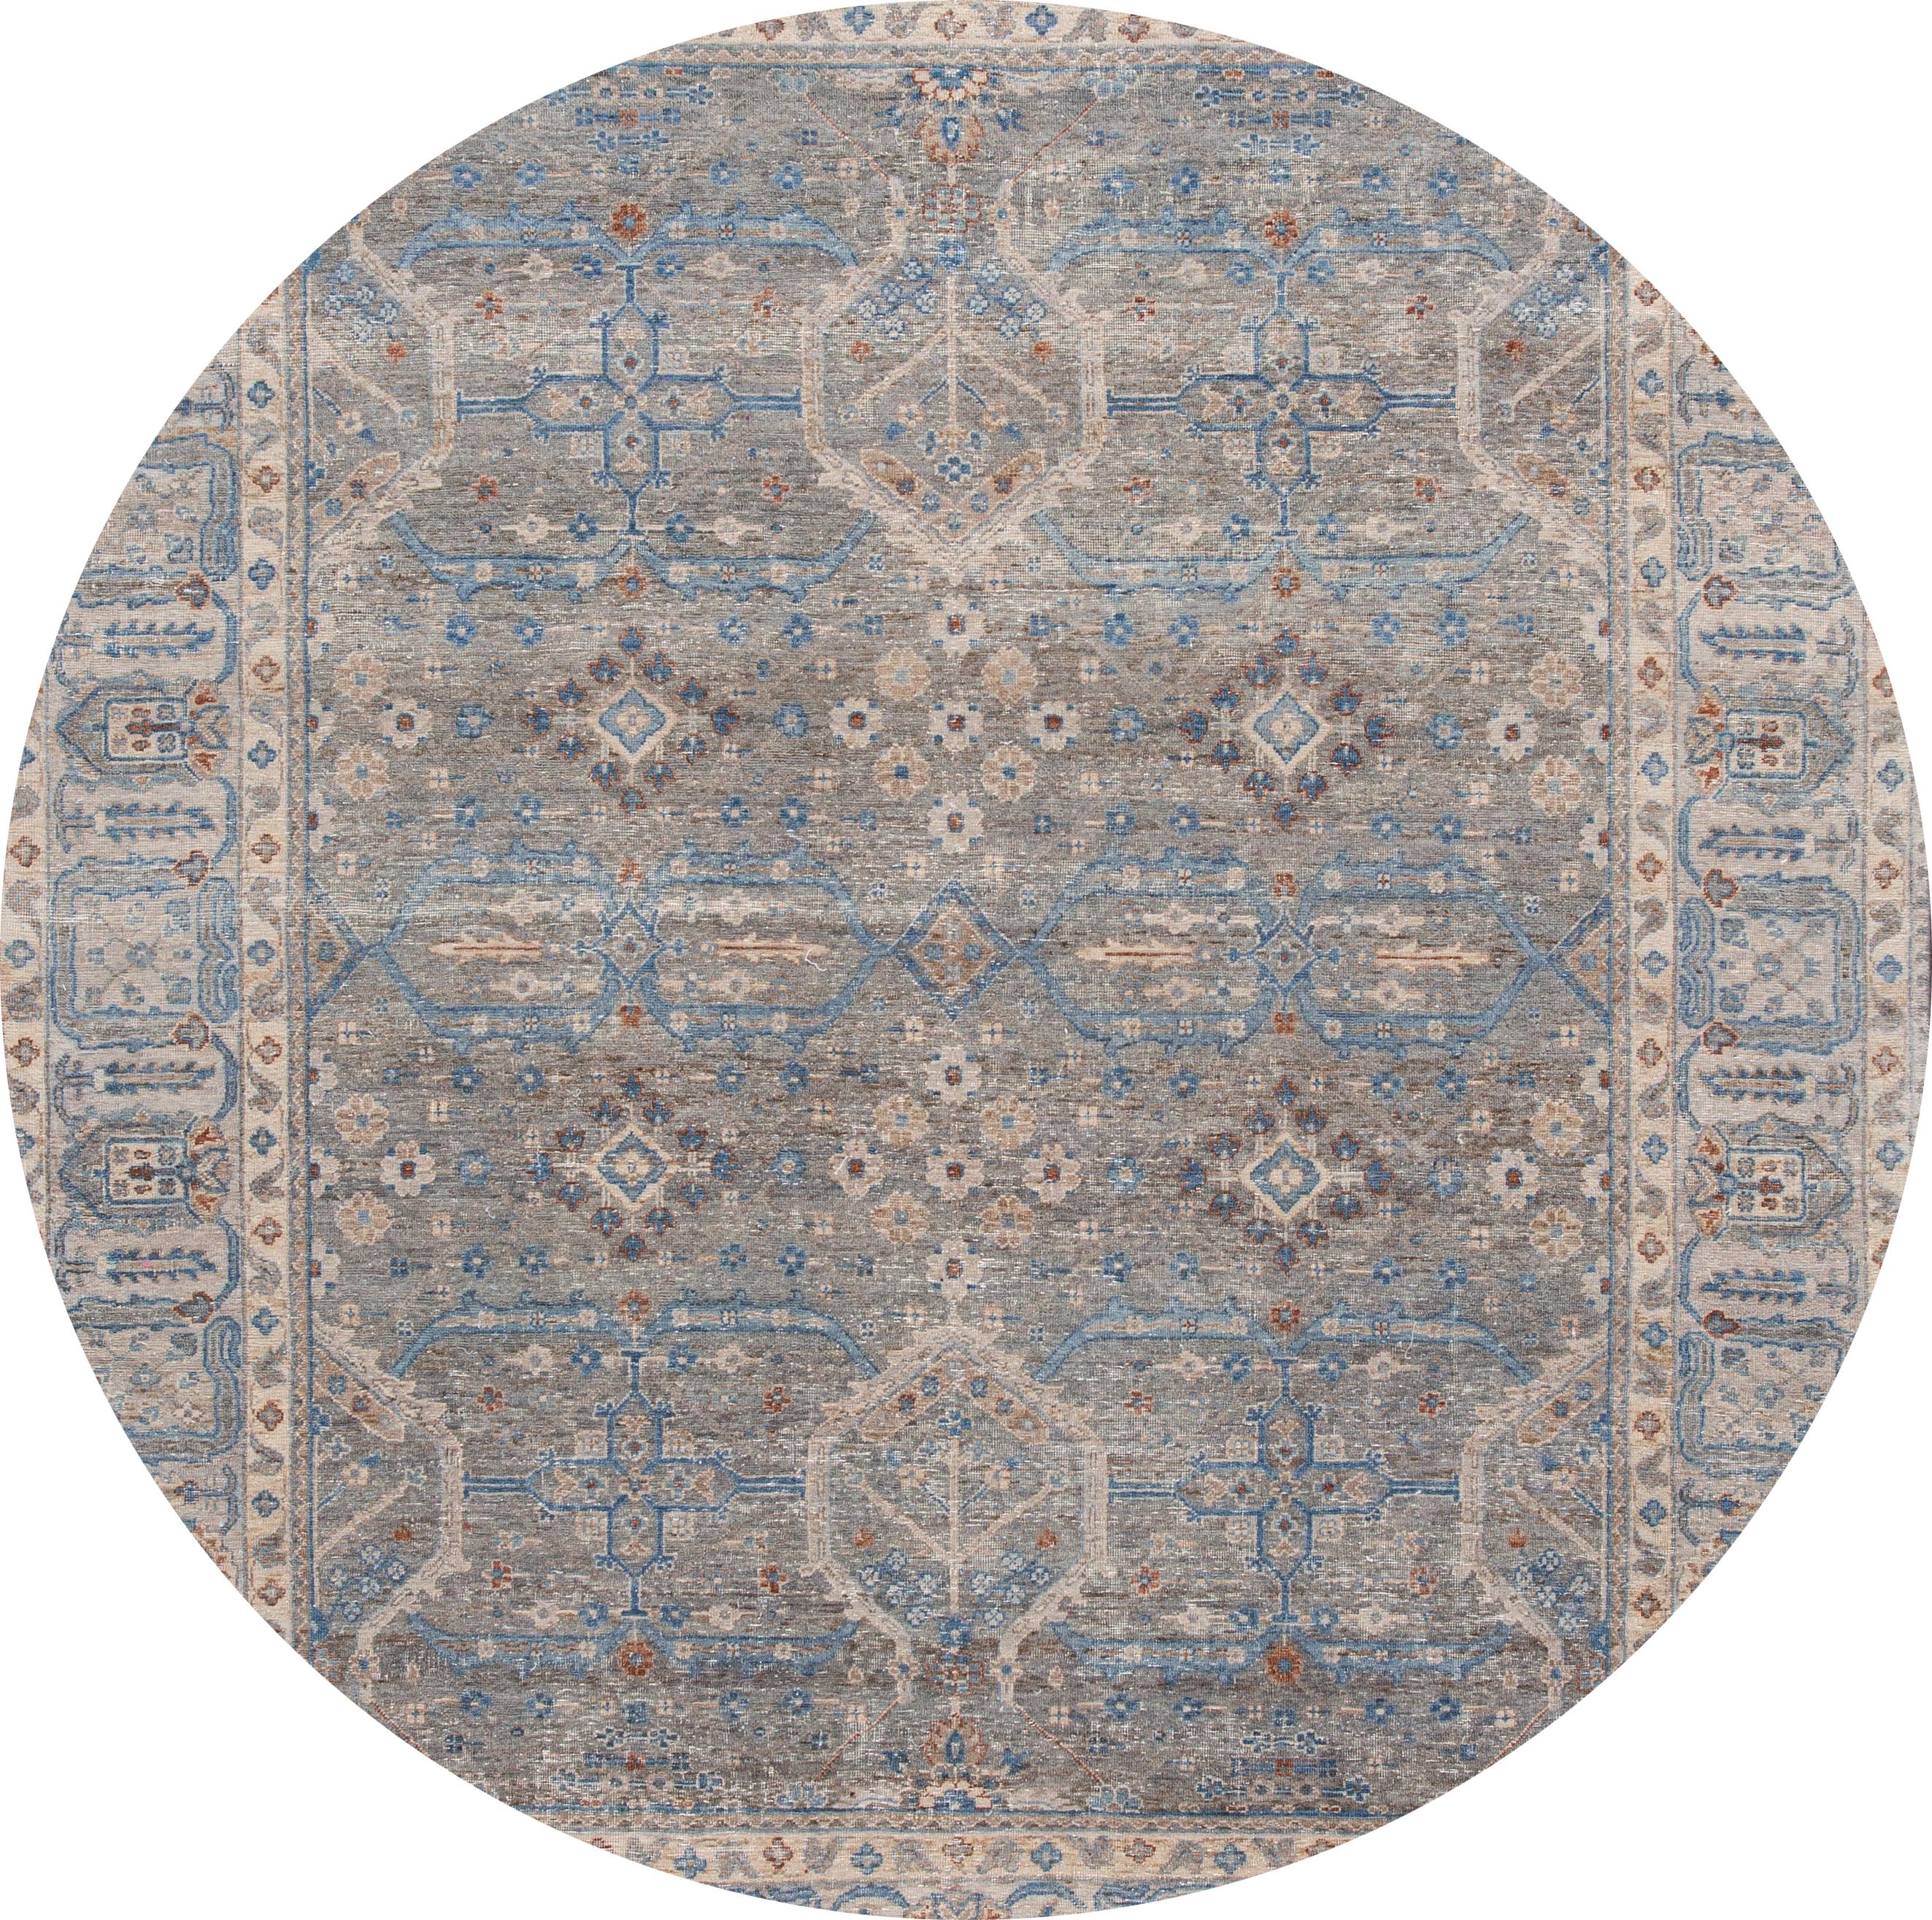 Magnifique tapis indien moderne en laine nouée à la main, avec un champ gris, des accents bleus, bruns et ivoires et un motif géométrique sur toute la surface.

Ce tapis mesure 7' 10